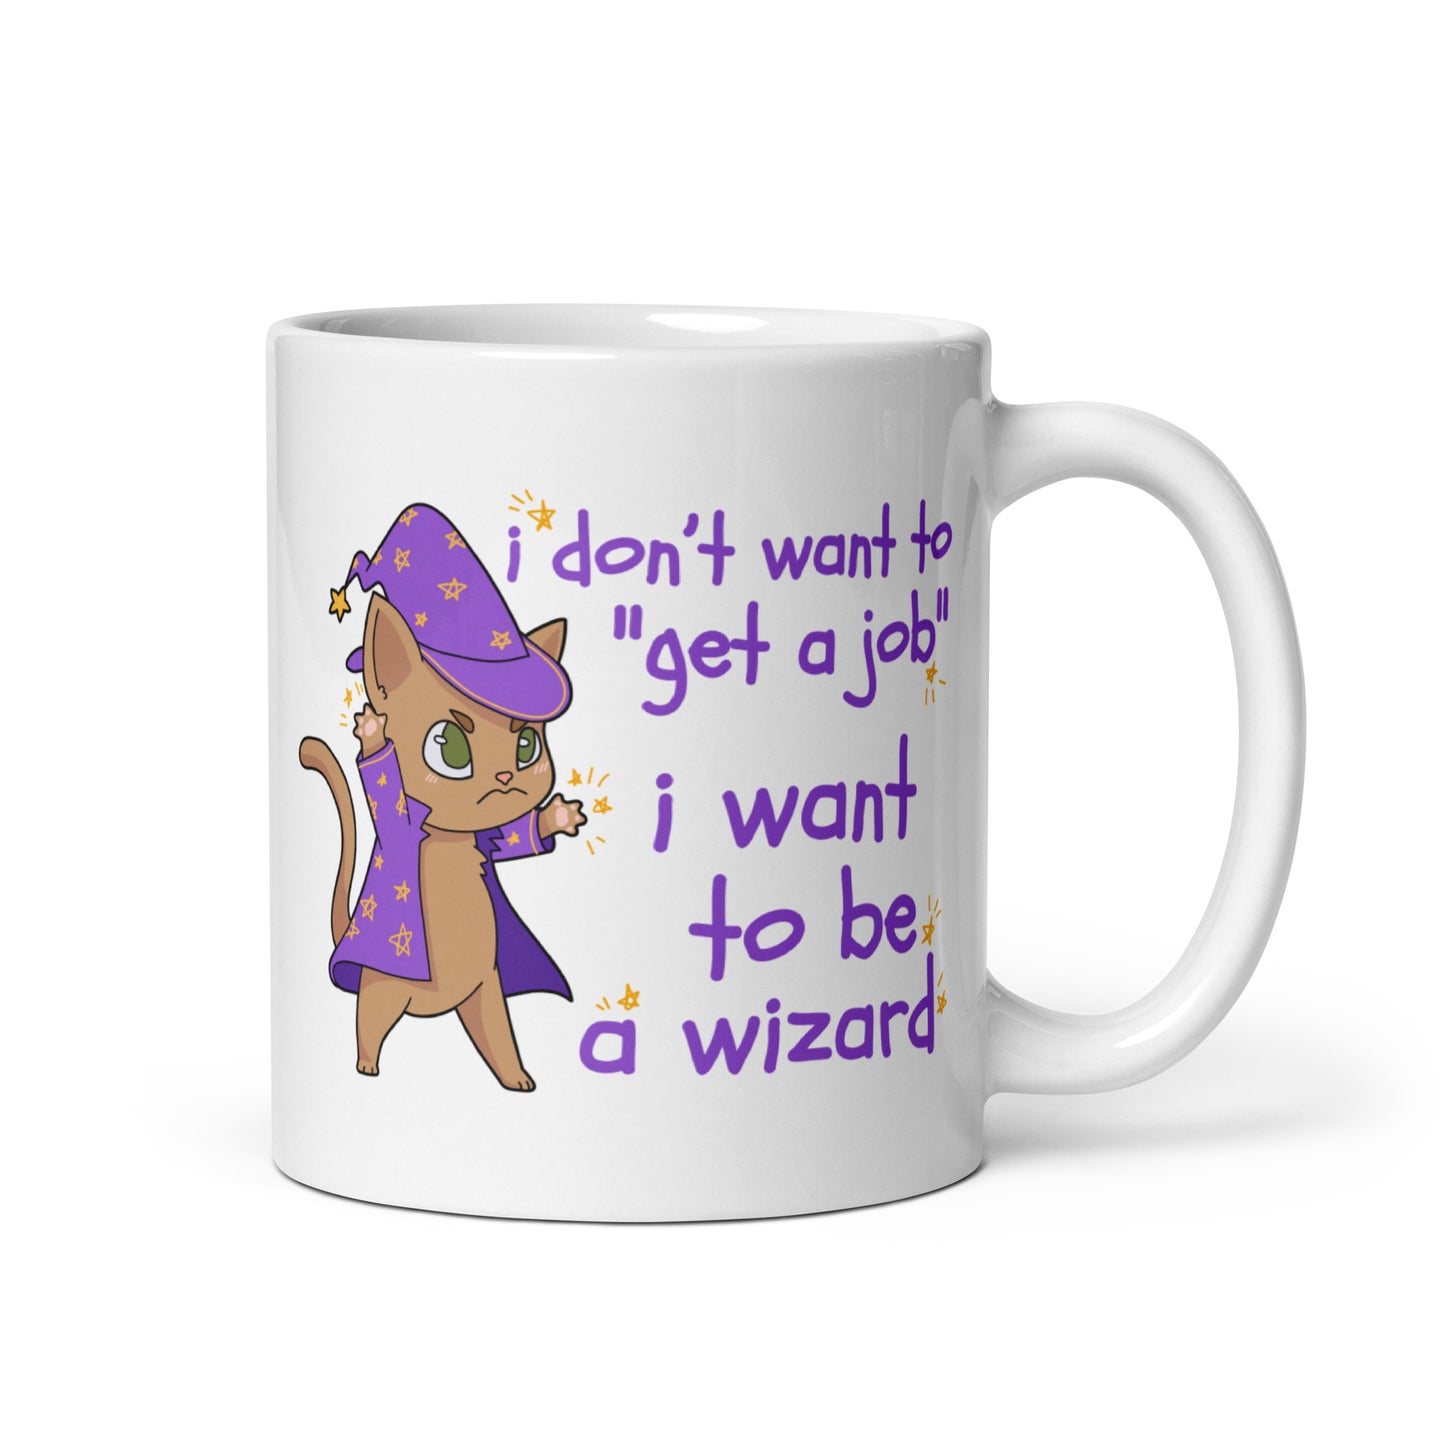 I Don't Want To "Get A Job", I Want To Be A Wizard Mug